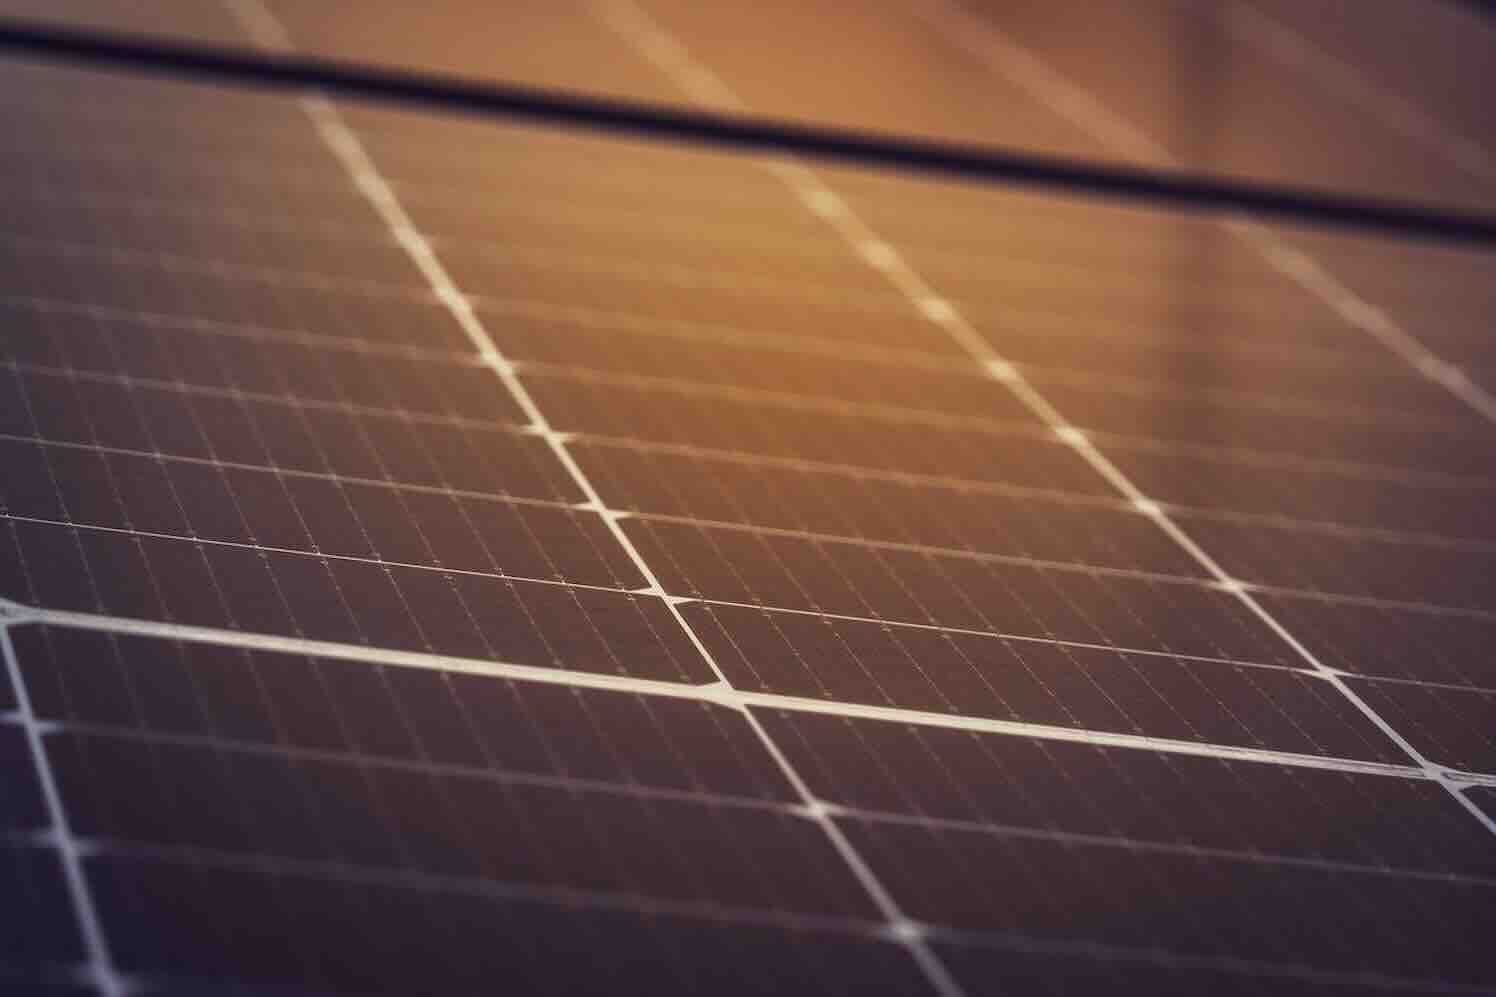 zonnepanelen combineren met een thuisbatterij